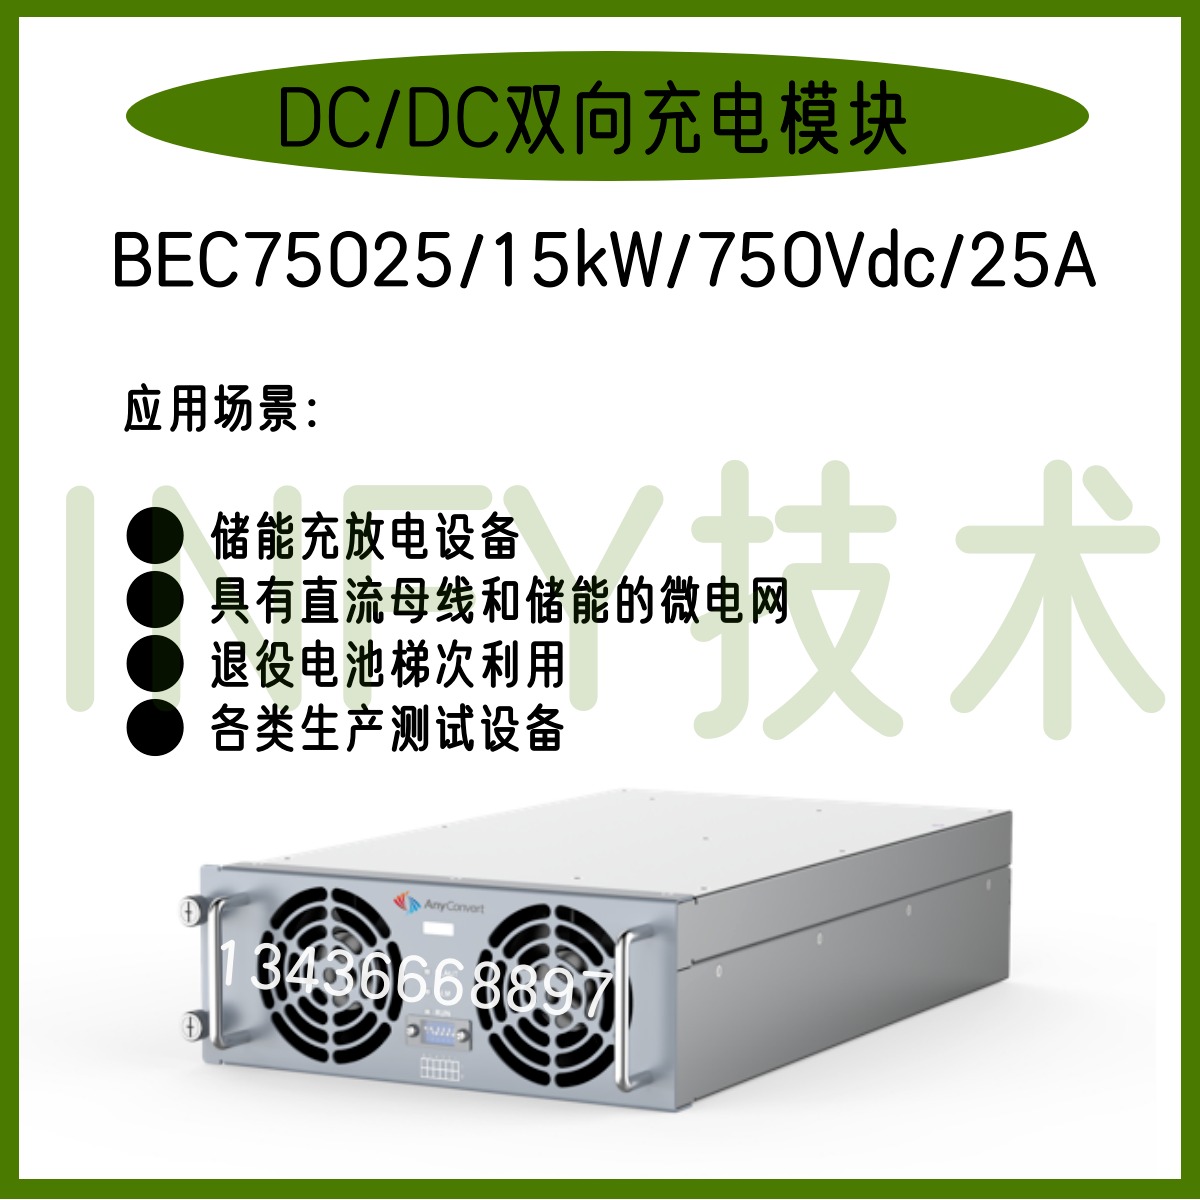 INFY英飞源BEC75025/15kW/750Vdc25A 双向DC/DC变换模块储能退役电池梯次利用